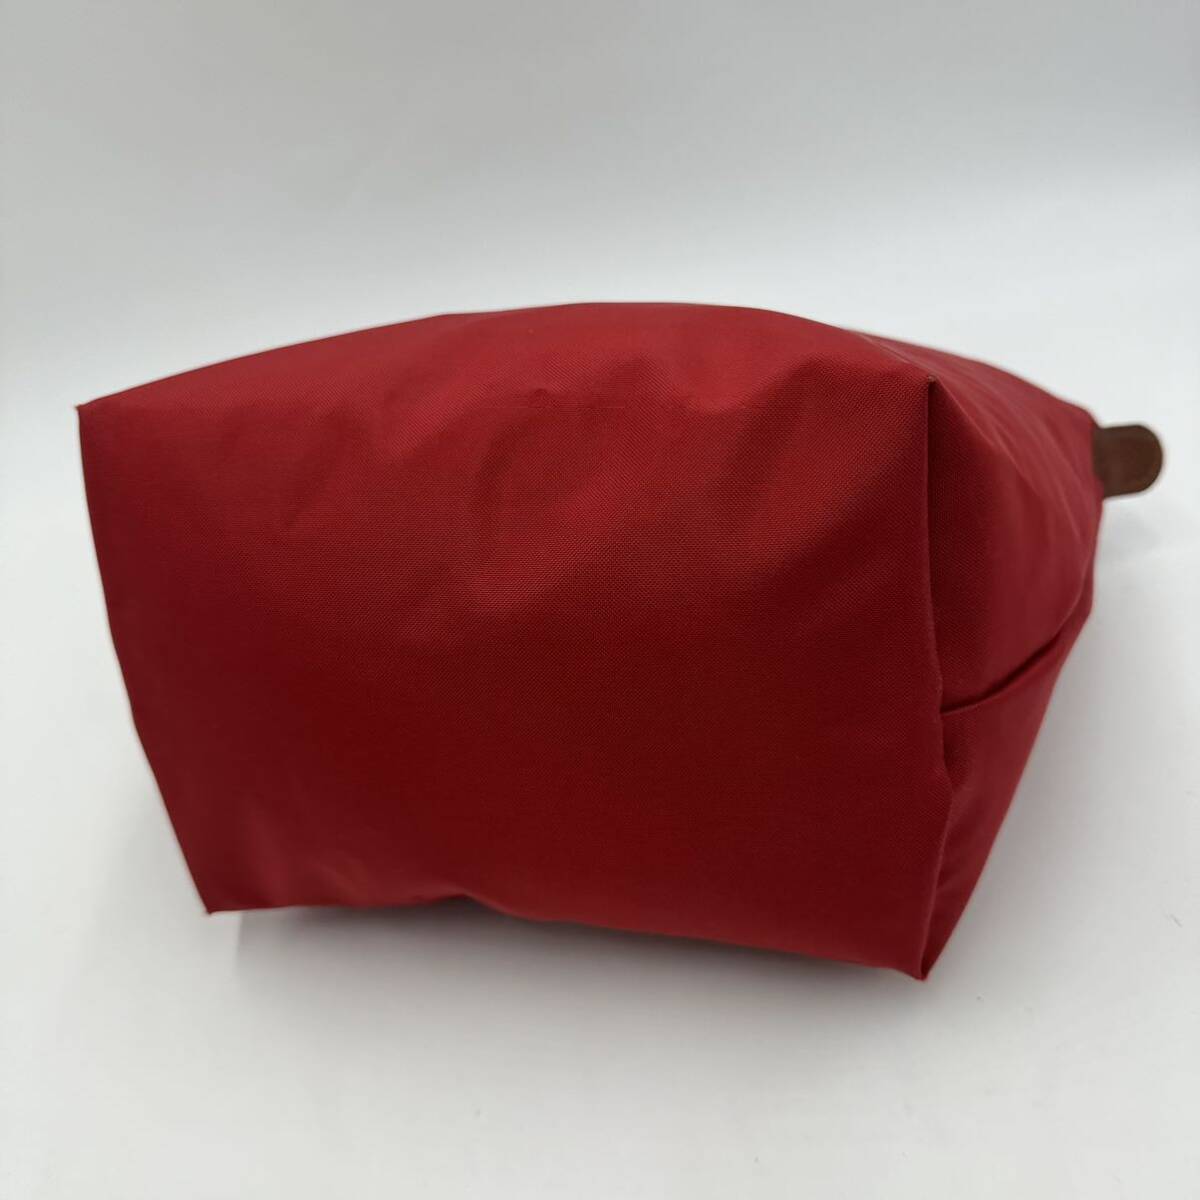 A☆良品/人気モデル!!'コンパクト折り畳み可能' Longchamp ロンシャン LE PPIAGE TYPE 'S' 舟型 ミニ トートバッグ 手提げ ハンドバッグ 鞄の画像8